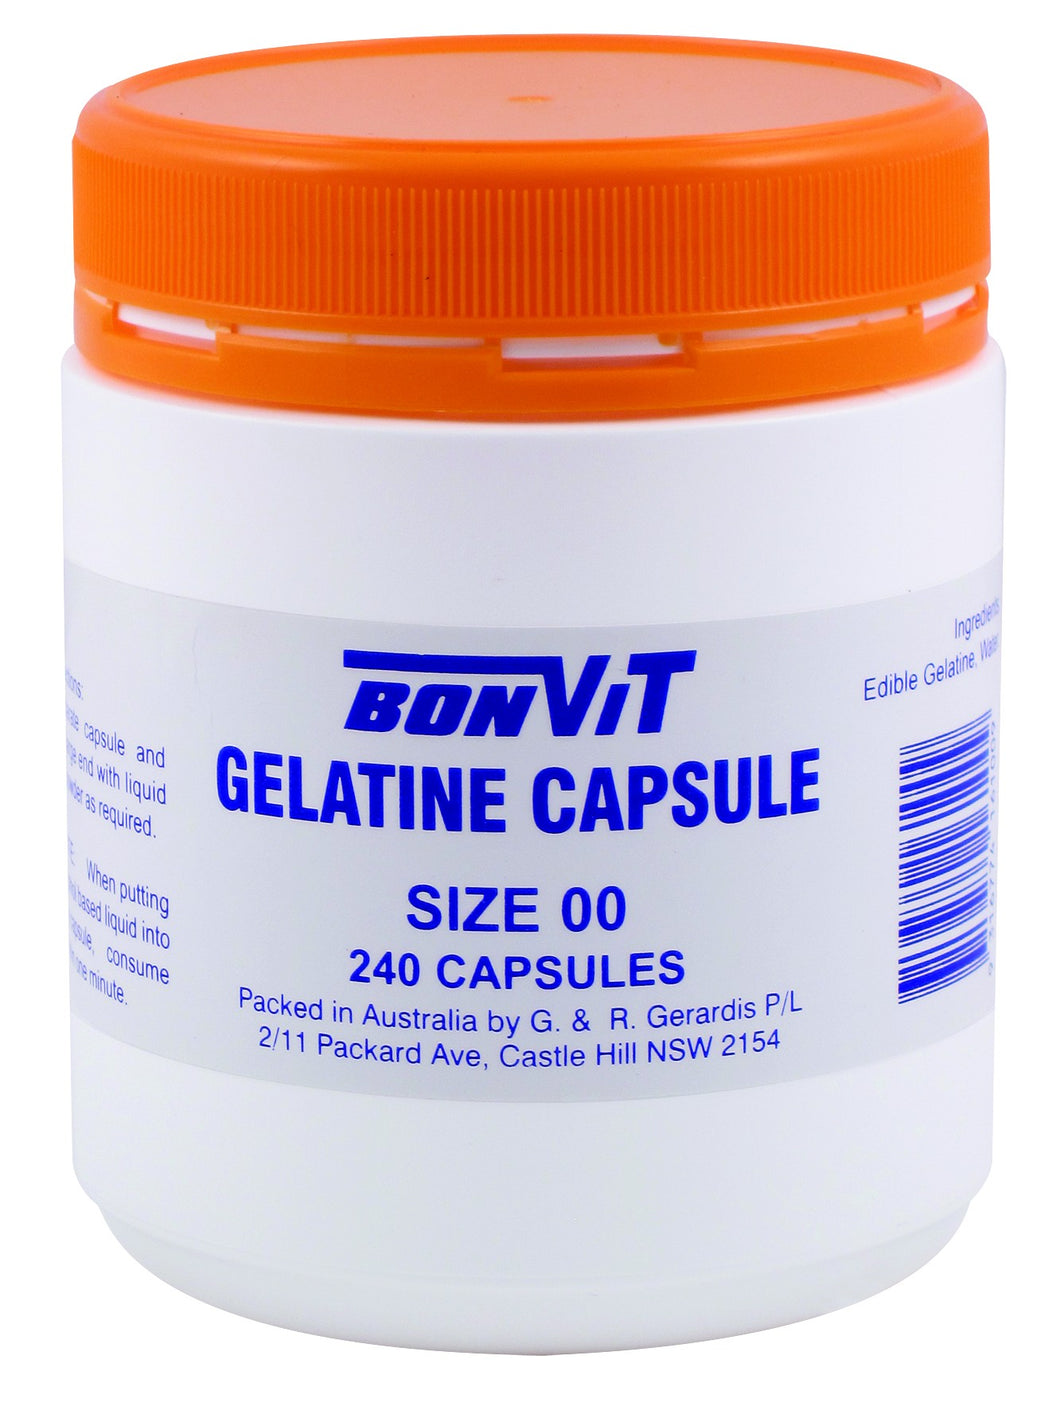 Bonvit Gelatin Capsules Size 00 240 Capsules - Natural Supplement